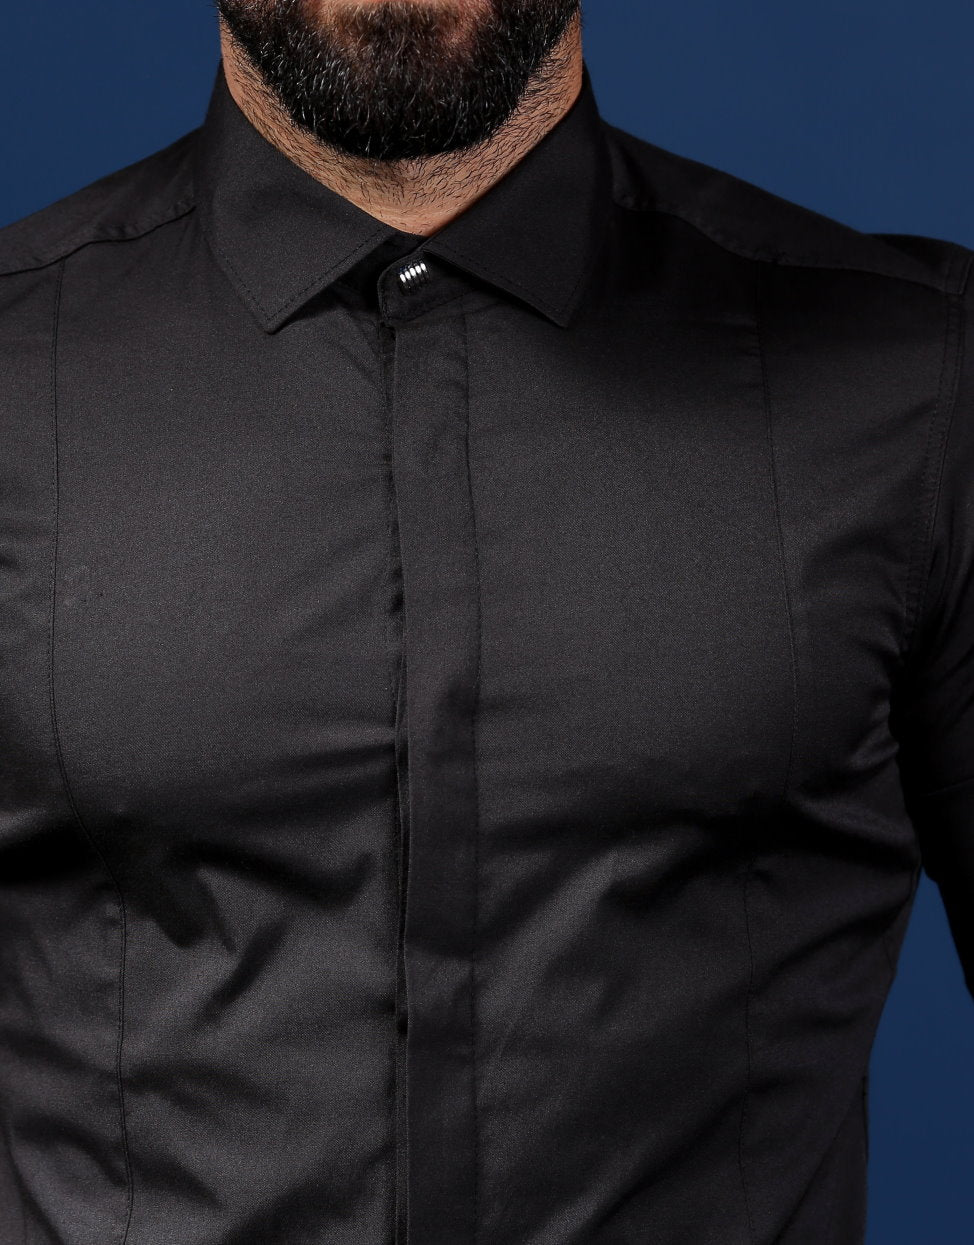 Чорна сорочка з еластичної бавовни на гудзиках XXL 80-07-450